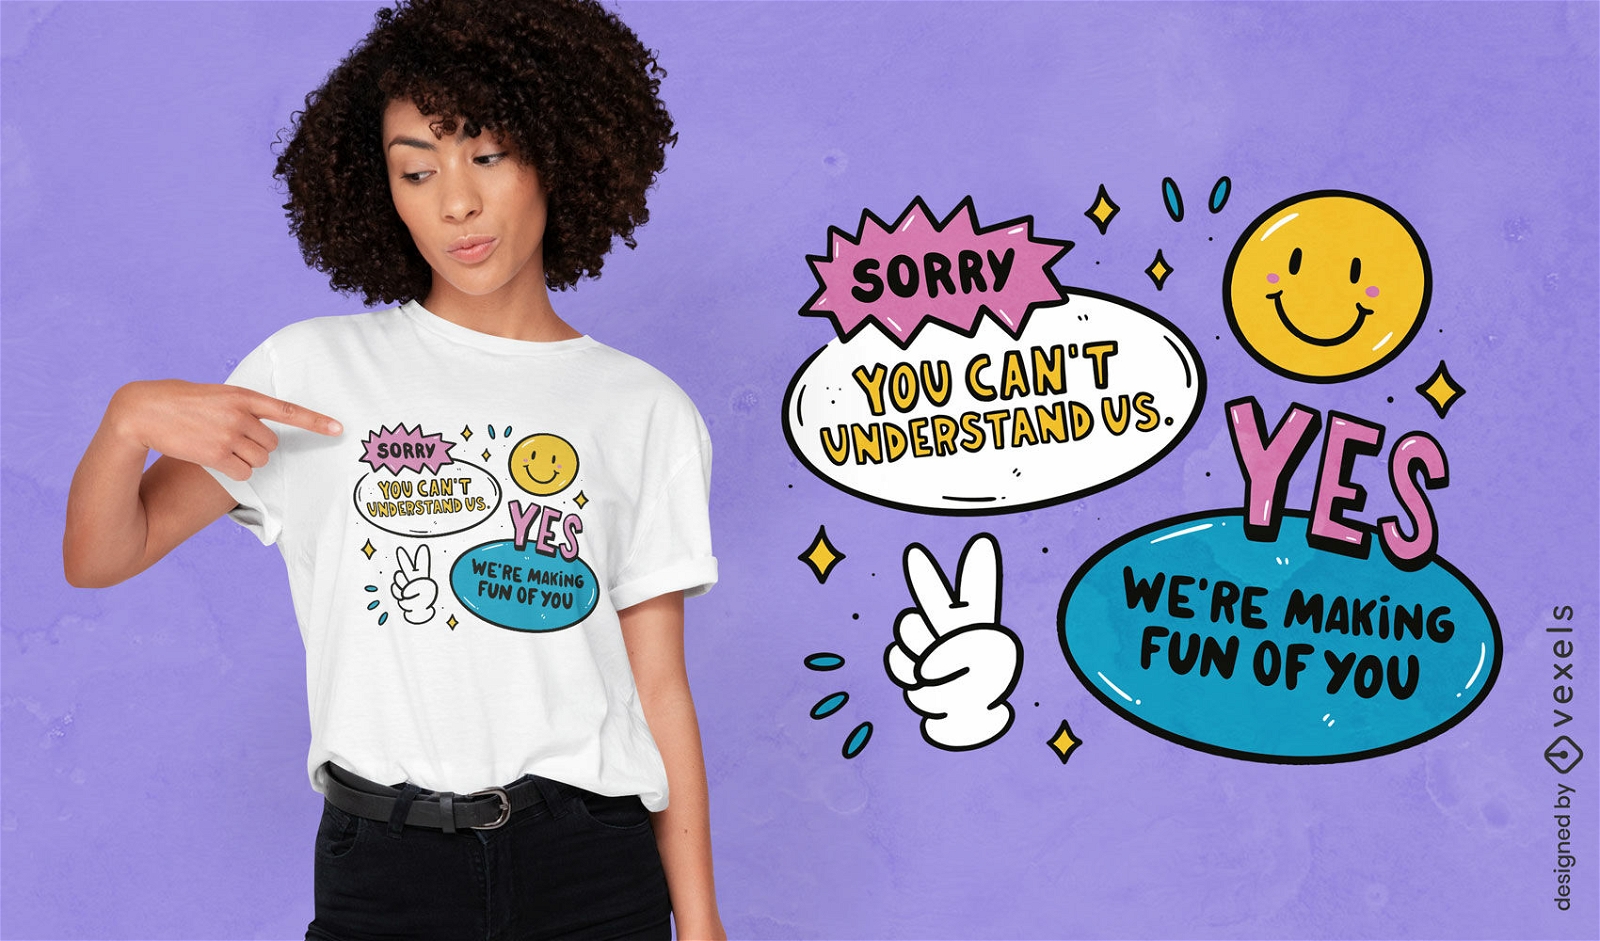 Lustig, dass wir uns über Ihr Zitat-T-Shirt-Design lustig machen